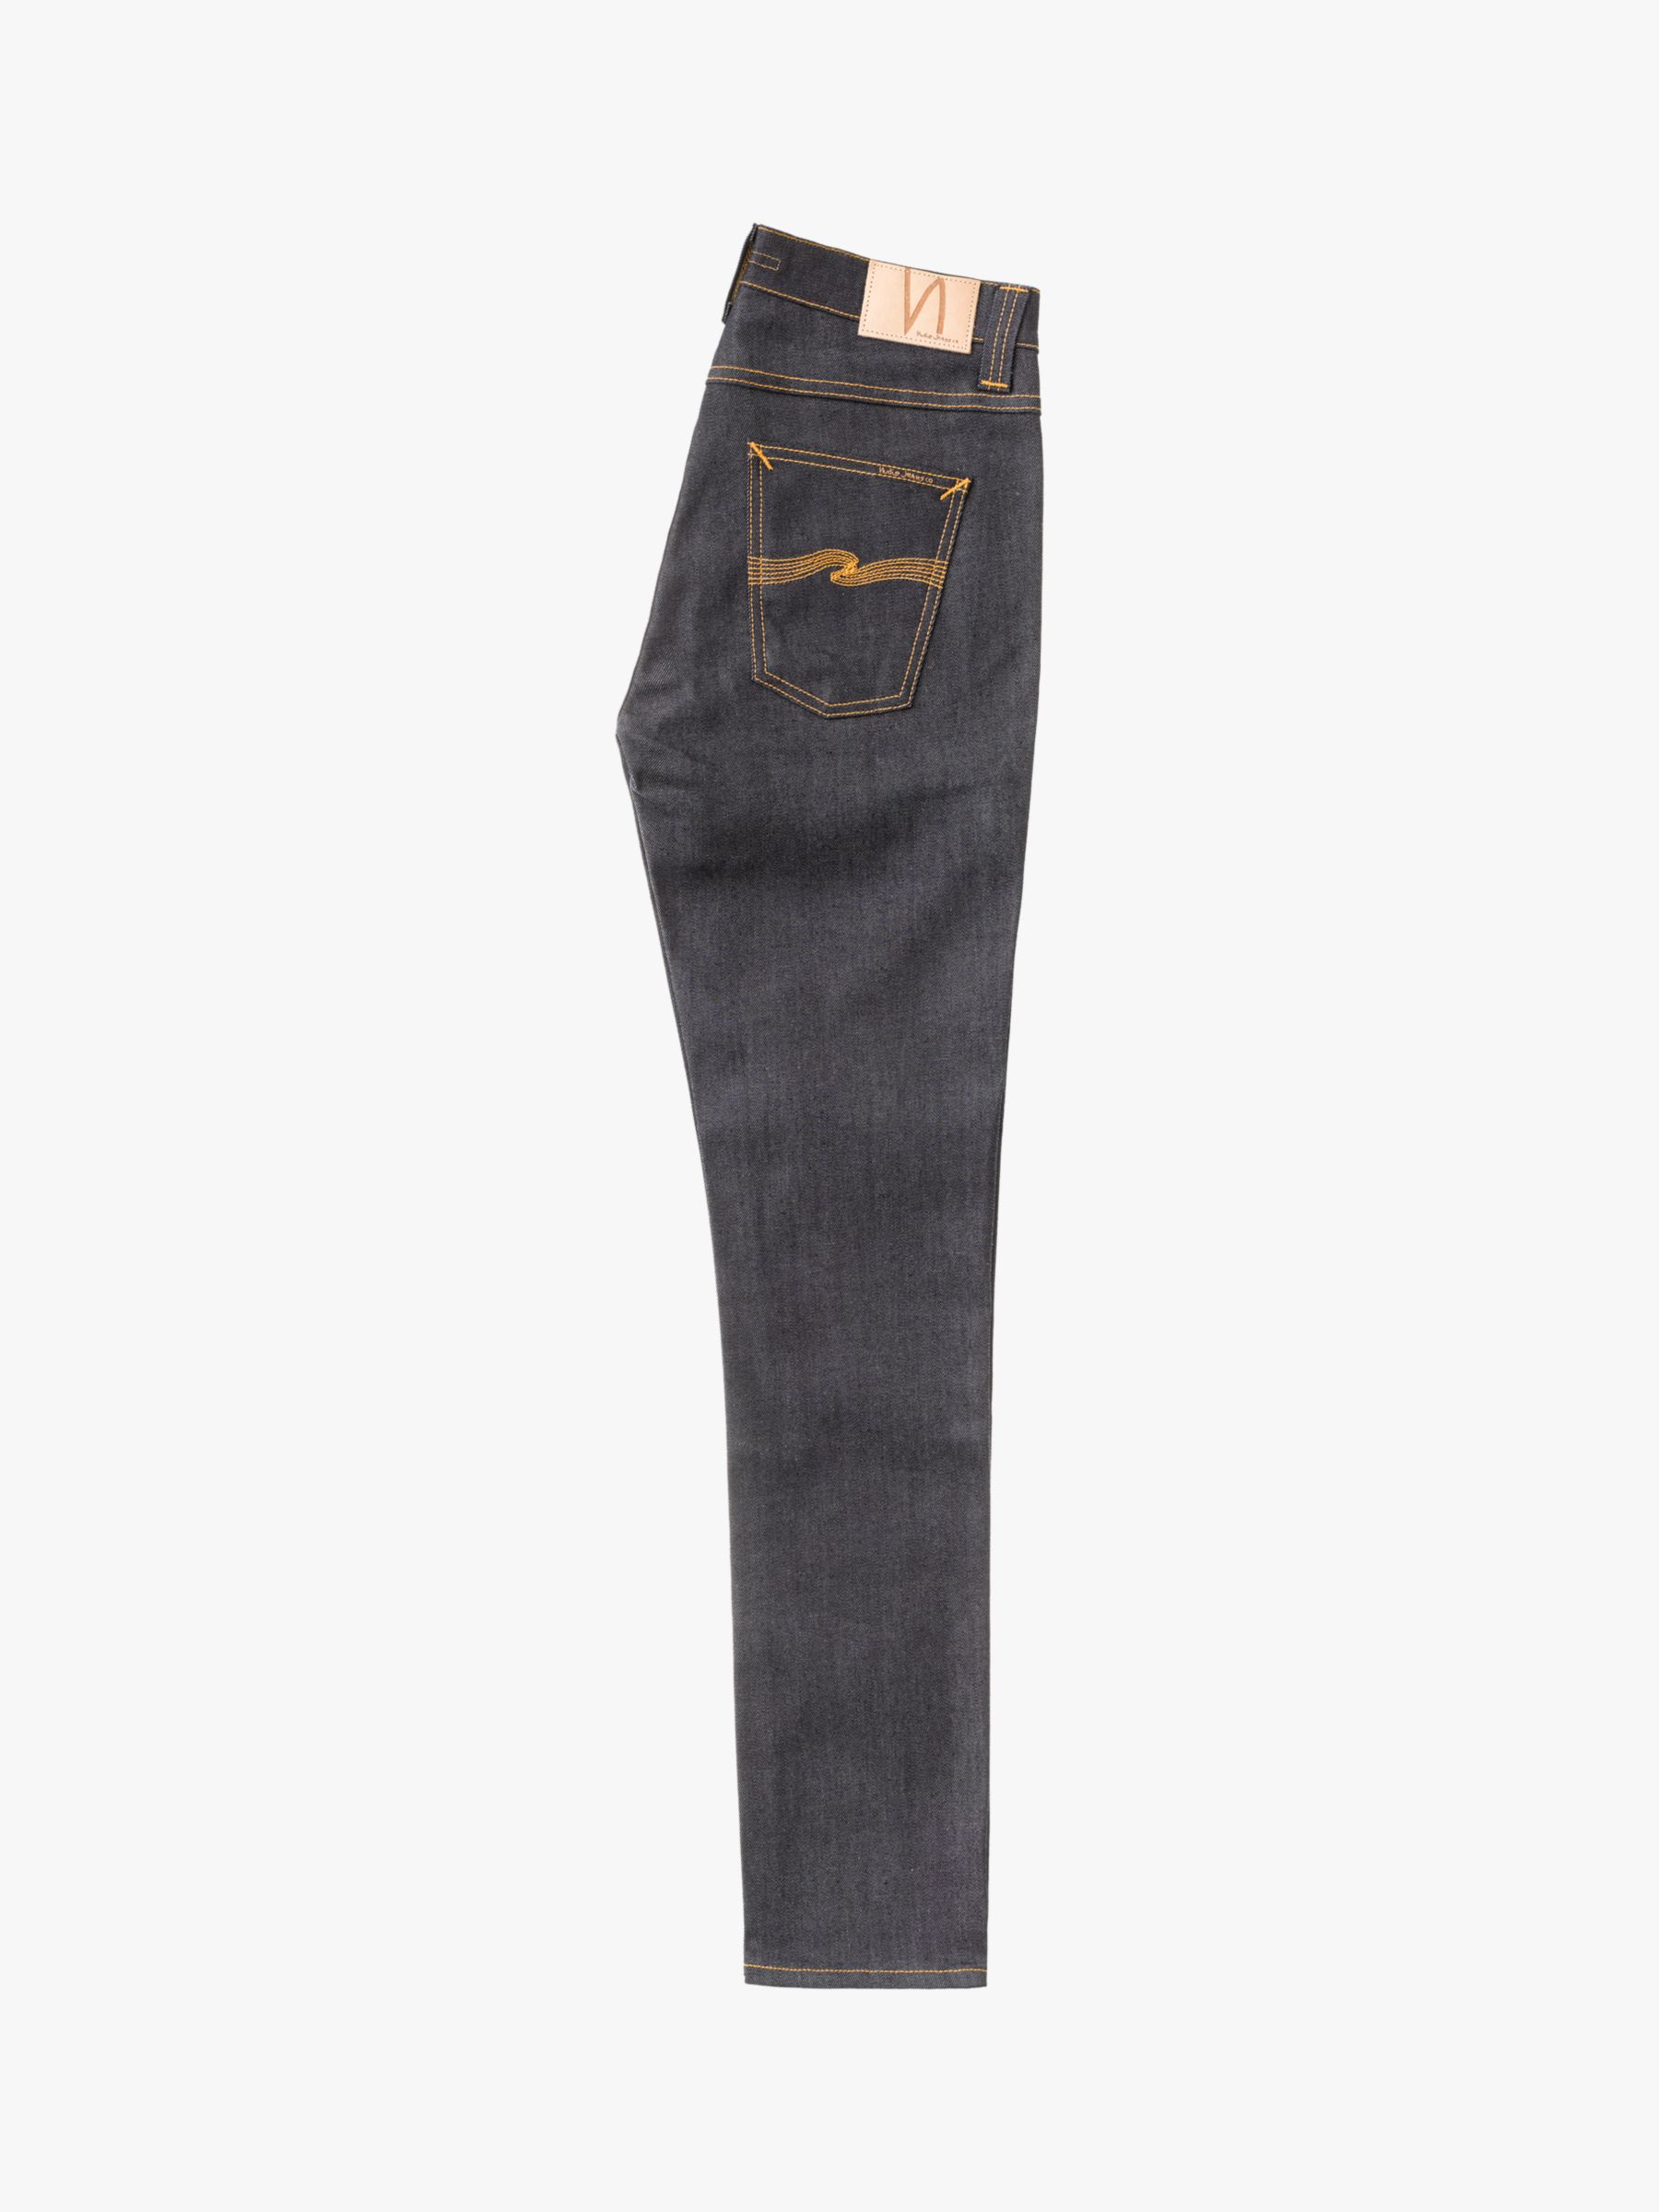 Nudie Jeans Slim Lean Dean Jeans, Dry 16 Dips at John Lewis & Partners